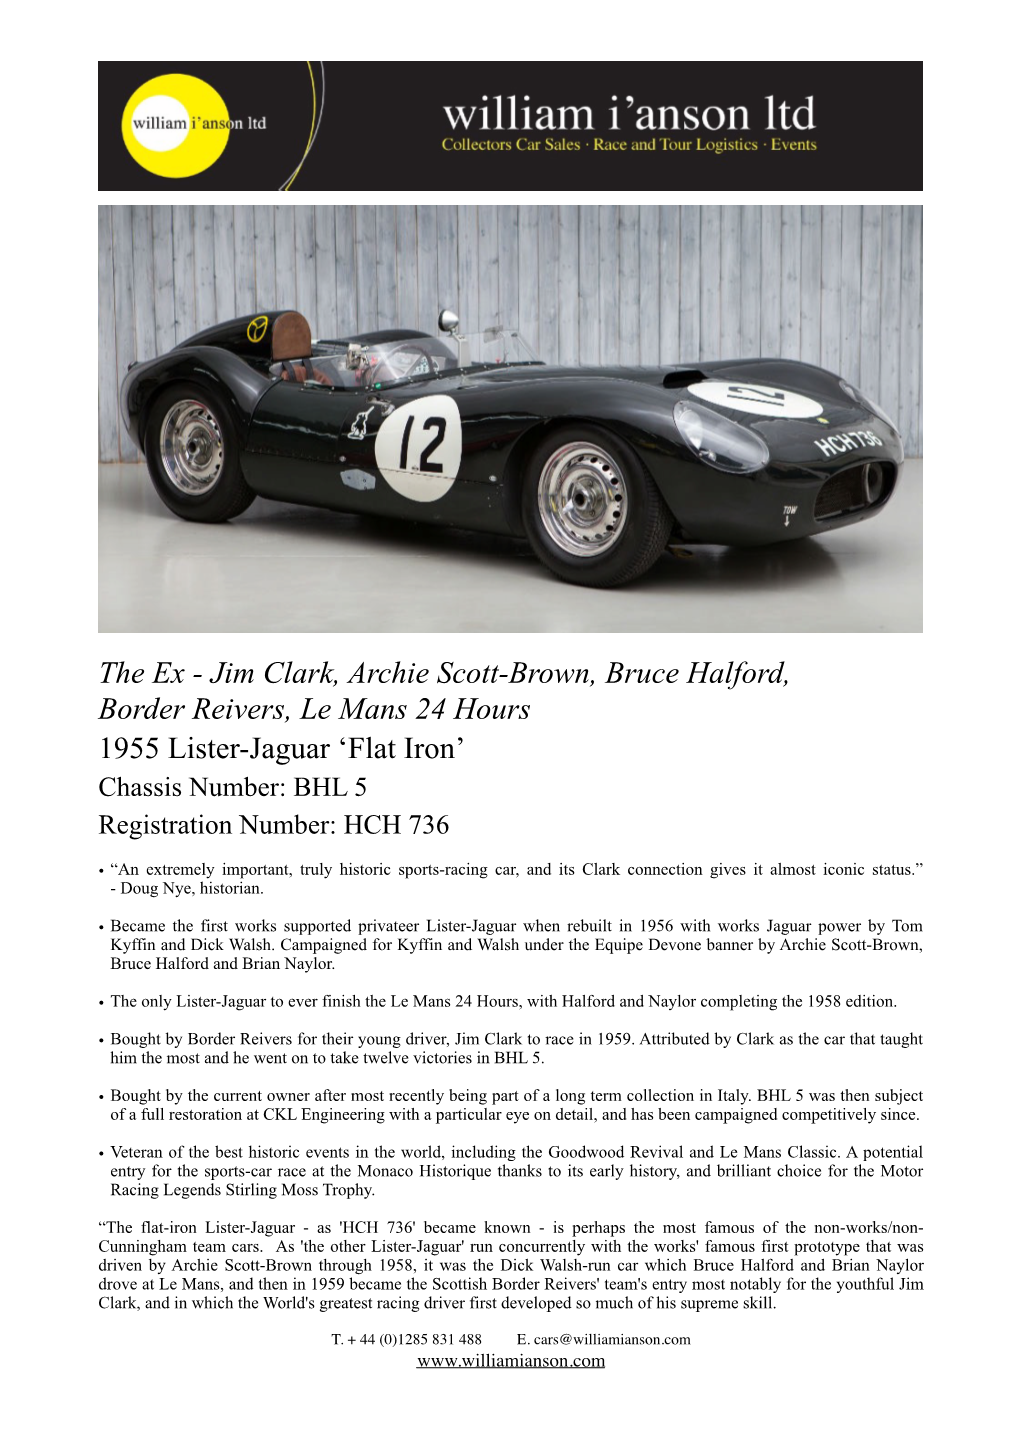 Lister-Jaguar ‘Flat Iron’ Chassis Number: BHL 5 Registration Number: HCH 736